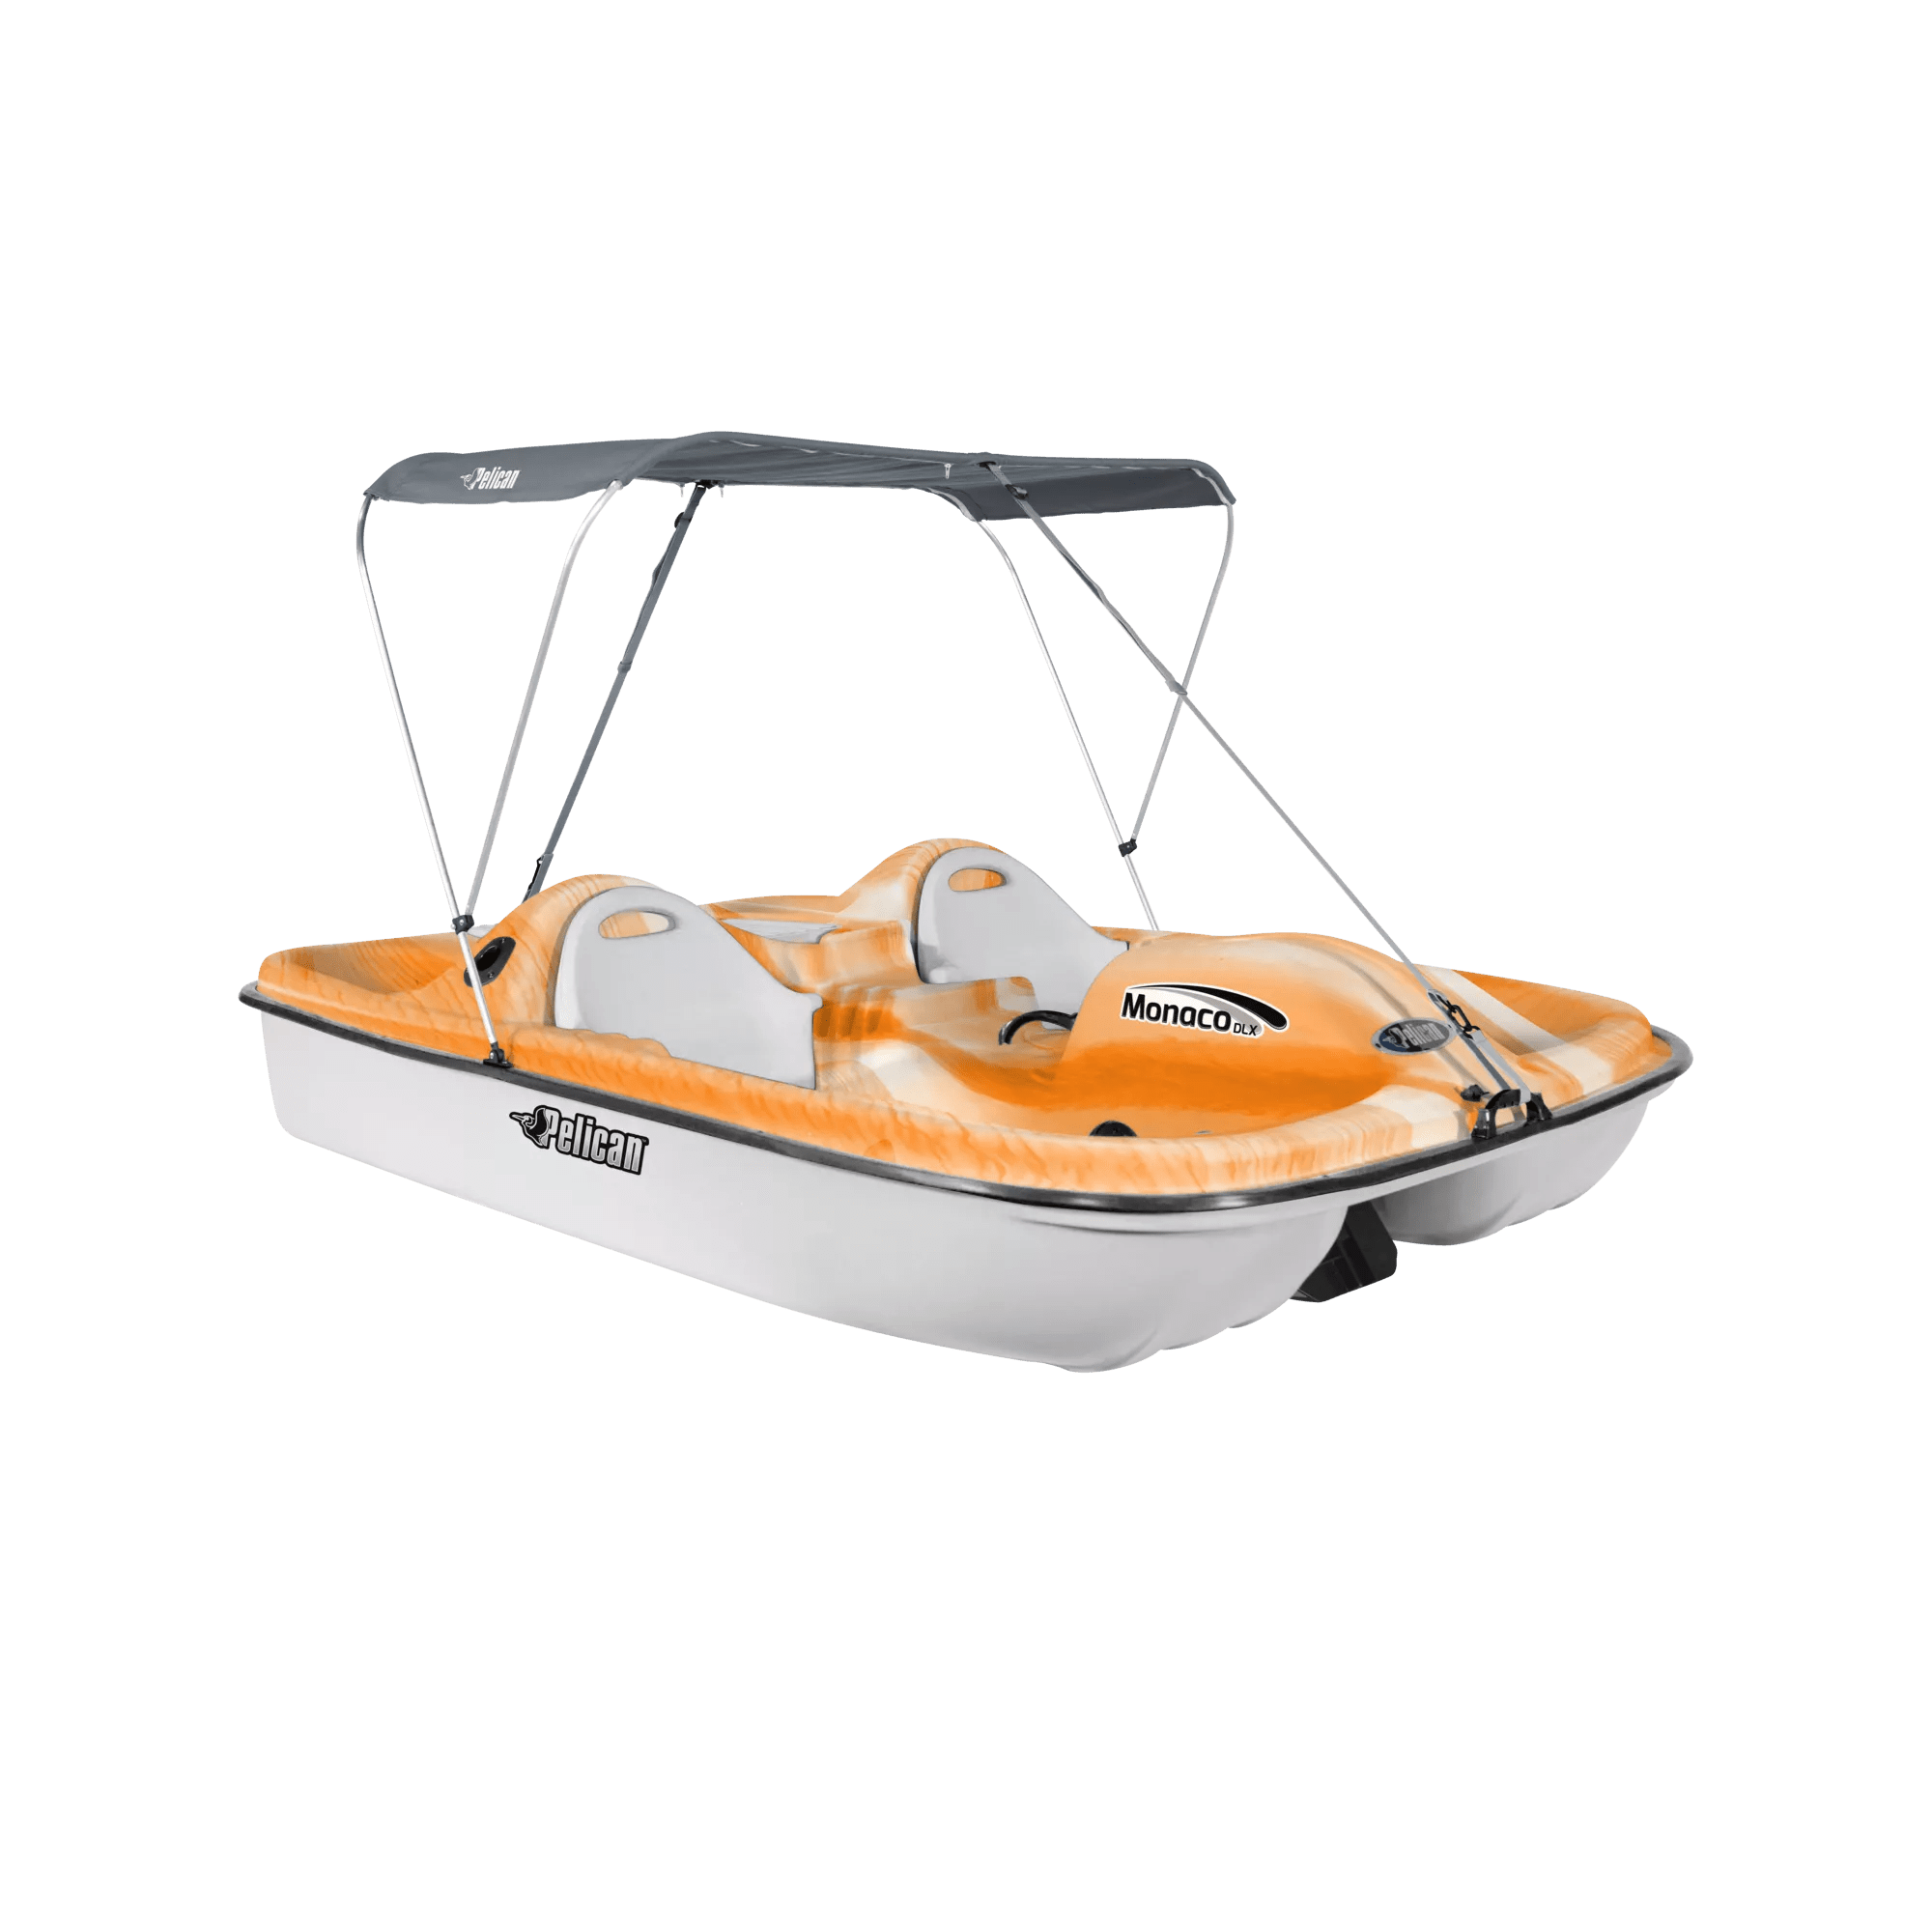 PELICAN - Monaco DLX Angler Pedal Boat - Orange - HHF25P103 - ISO